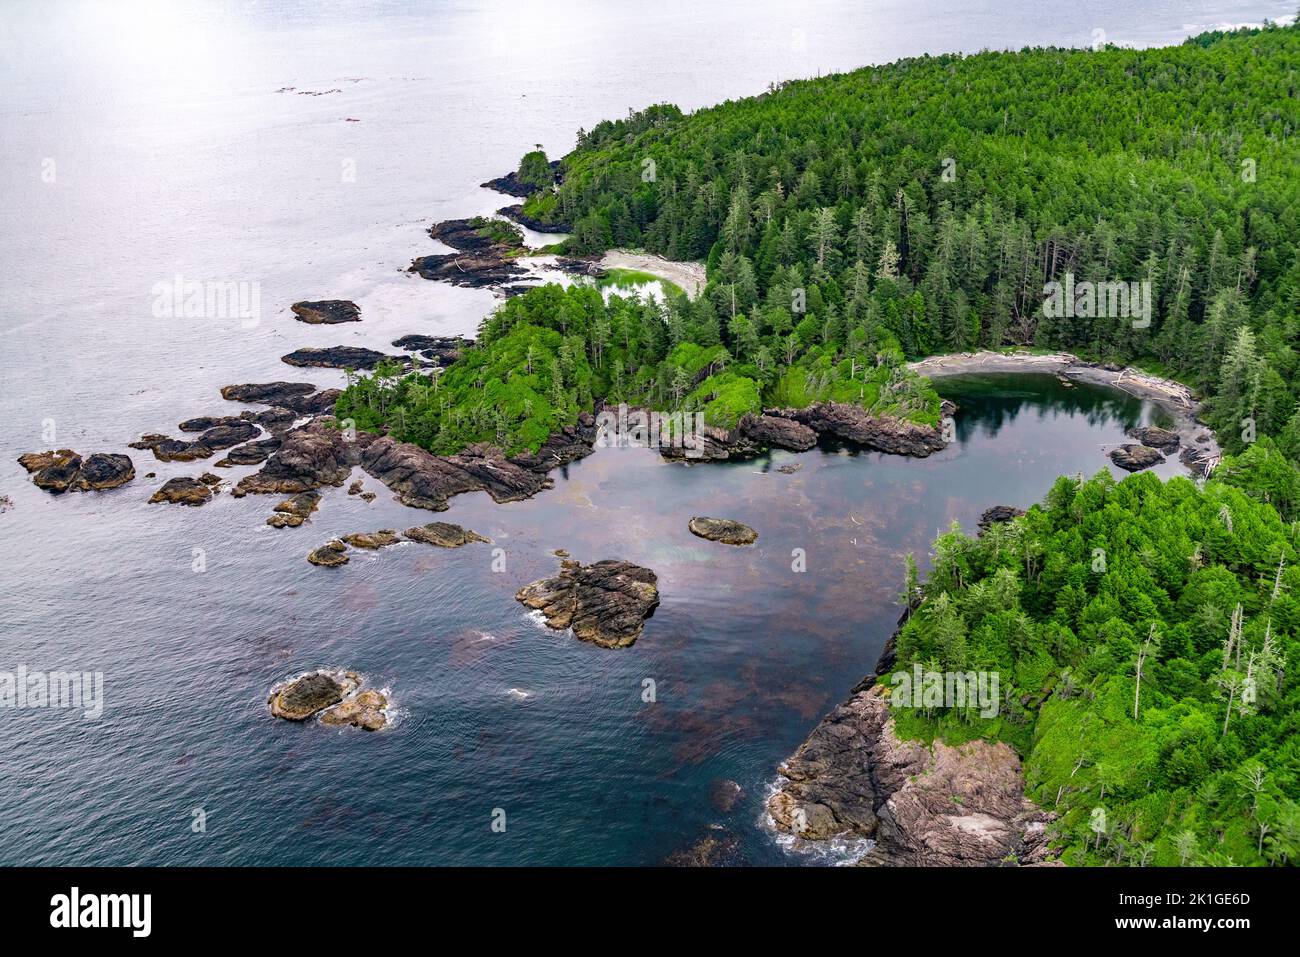 Immagine aerea della costa di Tofino, British Columbia, Canada Foto Stock